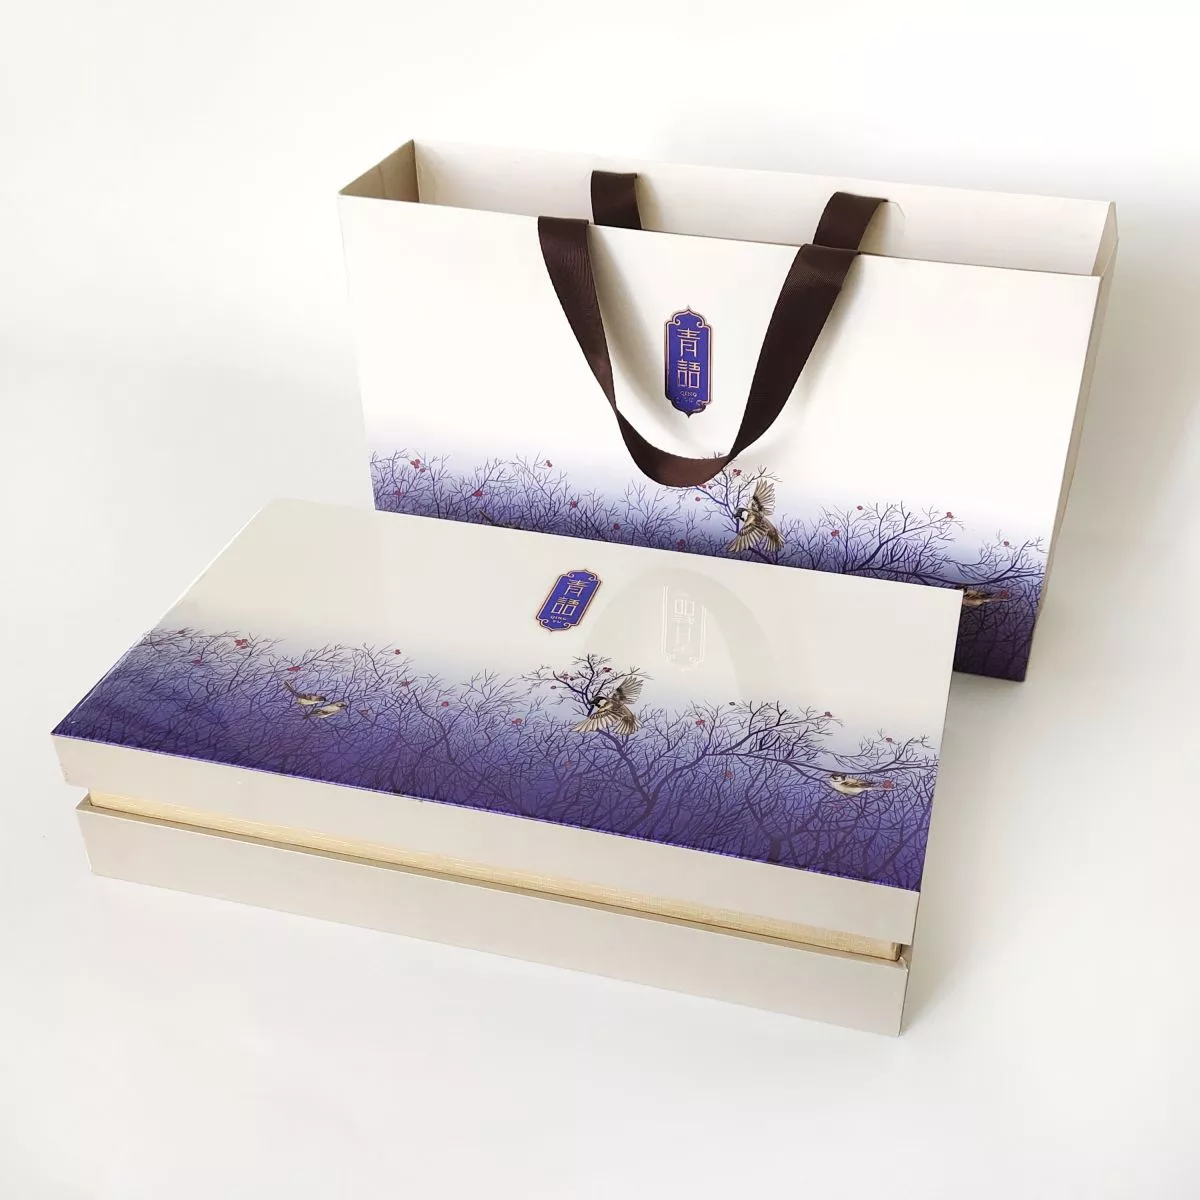 PB019 Tea Gift Box and Shopping Bag Set